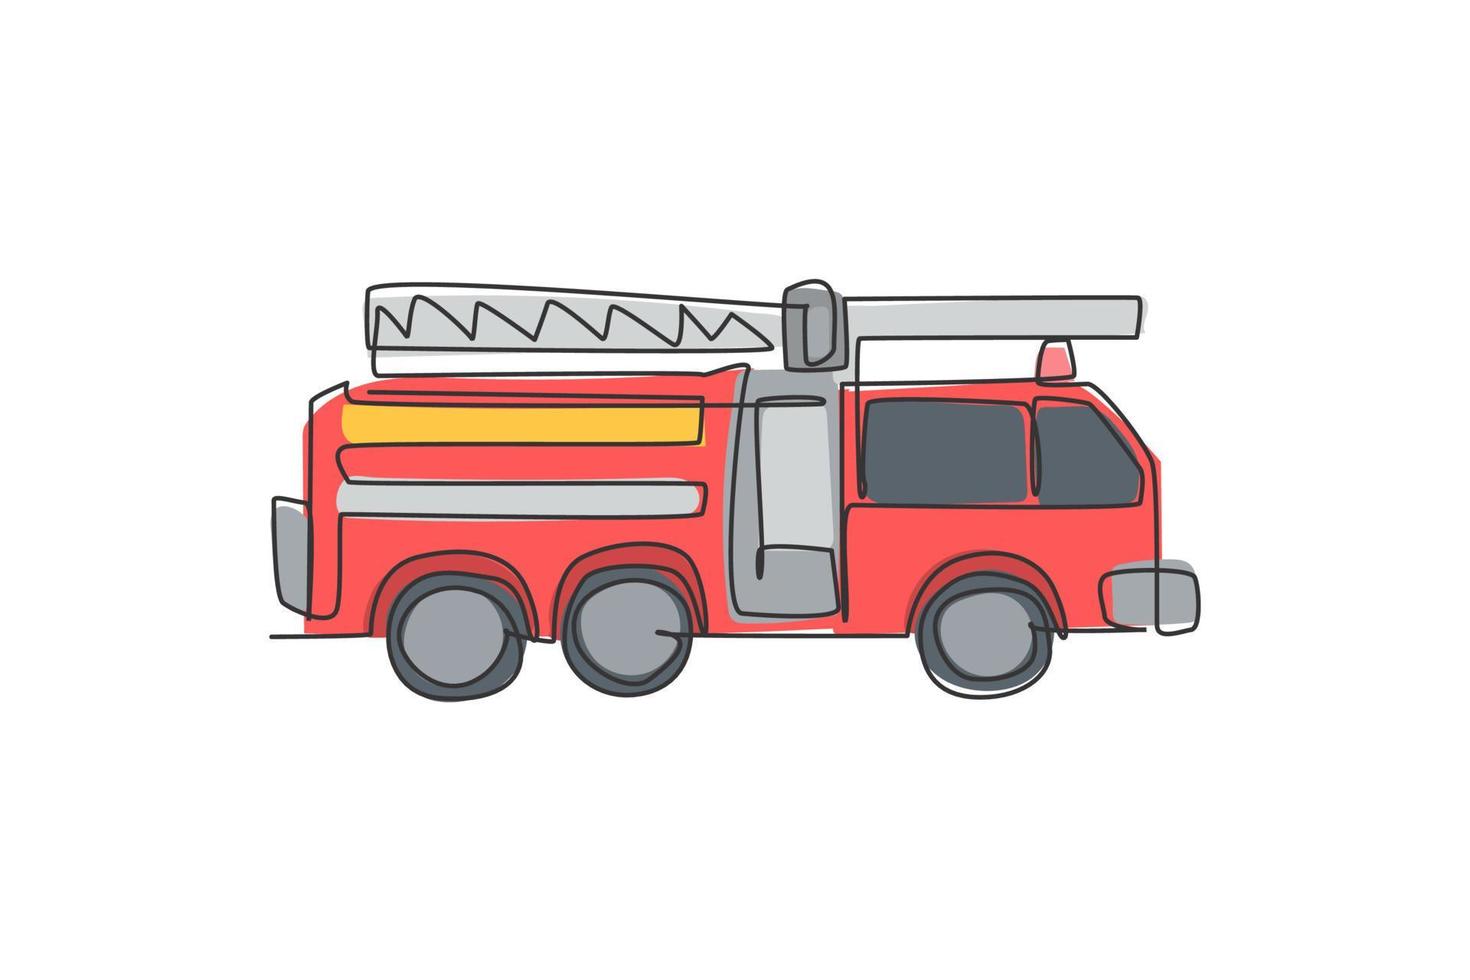 dibujo continuo de una línea del camión de bomberos de vehículos de carretera de emergencia. rescate de camión de bomberos como aparato de bombero dibujado a mano concepto minimalista. Ilustración gráfica de vector de diseño de dibujo de una sola línea moderna